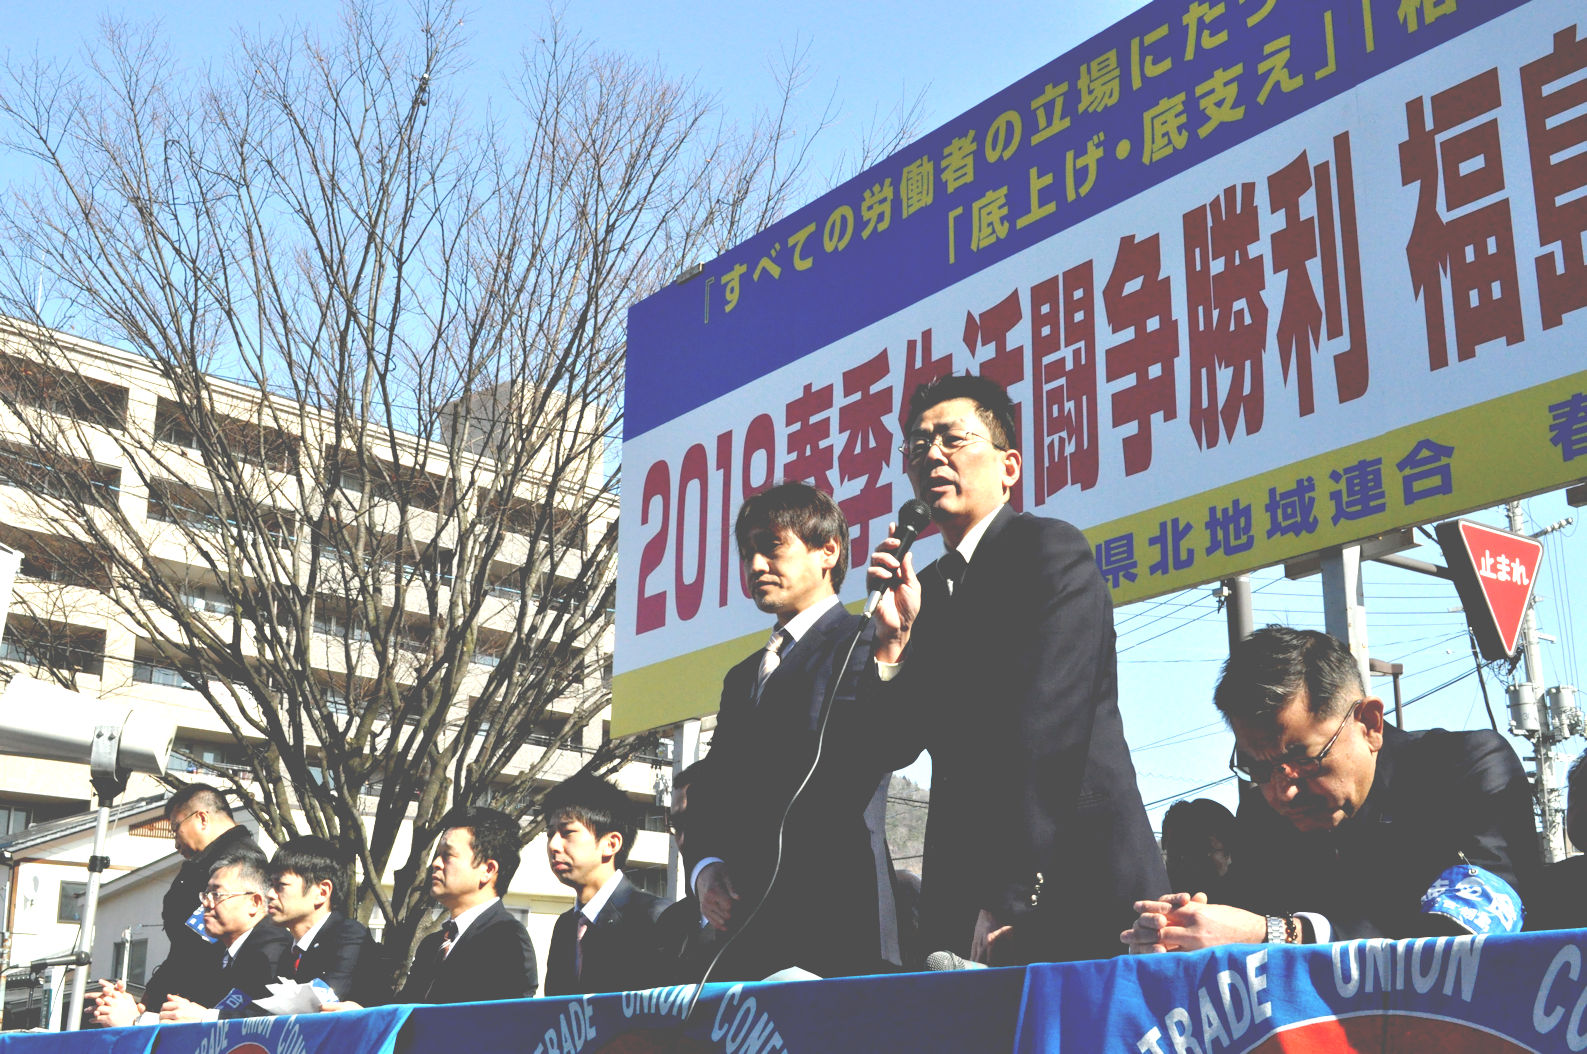 集会議長団に選出された（右）連合福島・加藤光一事務局長、（左）福島地区連合・成田威文議長(2)